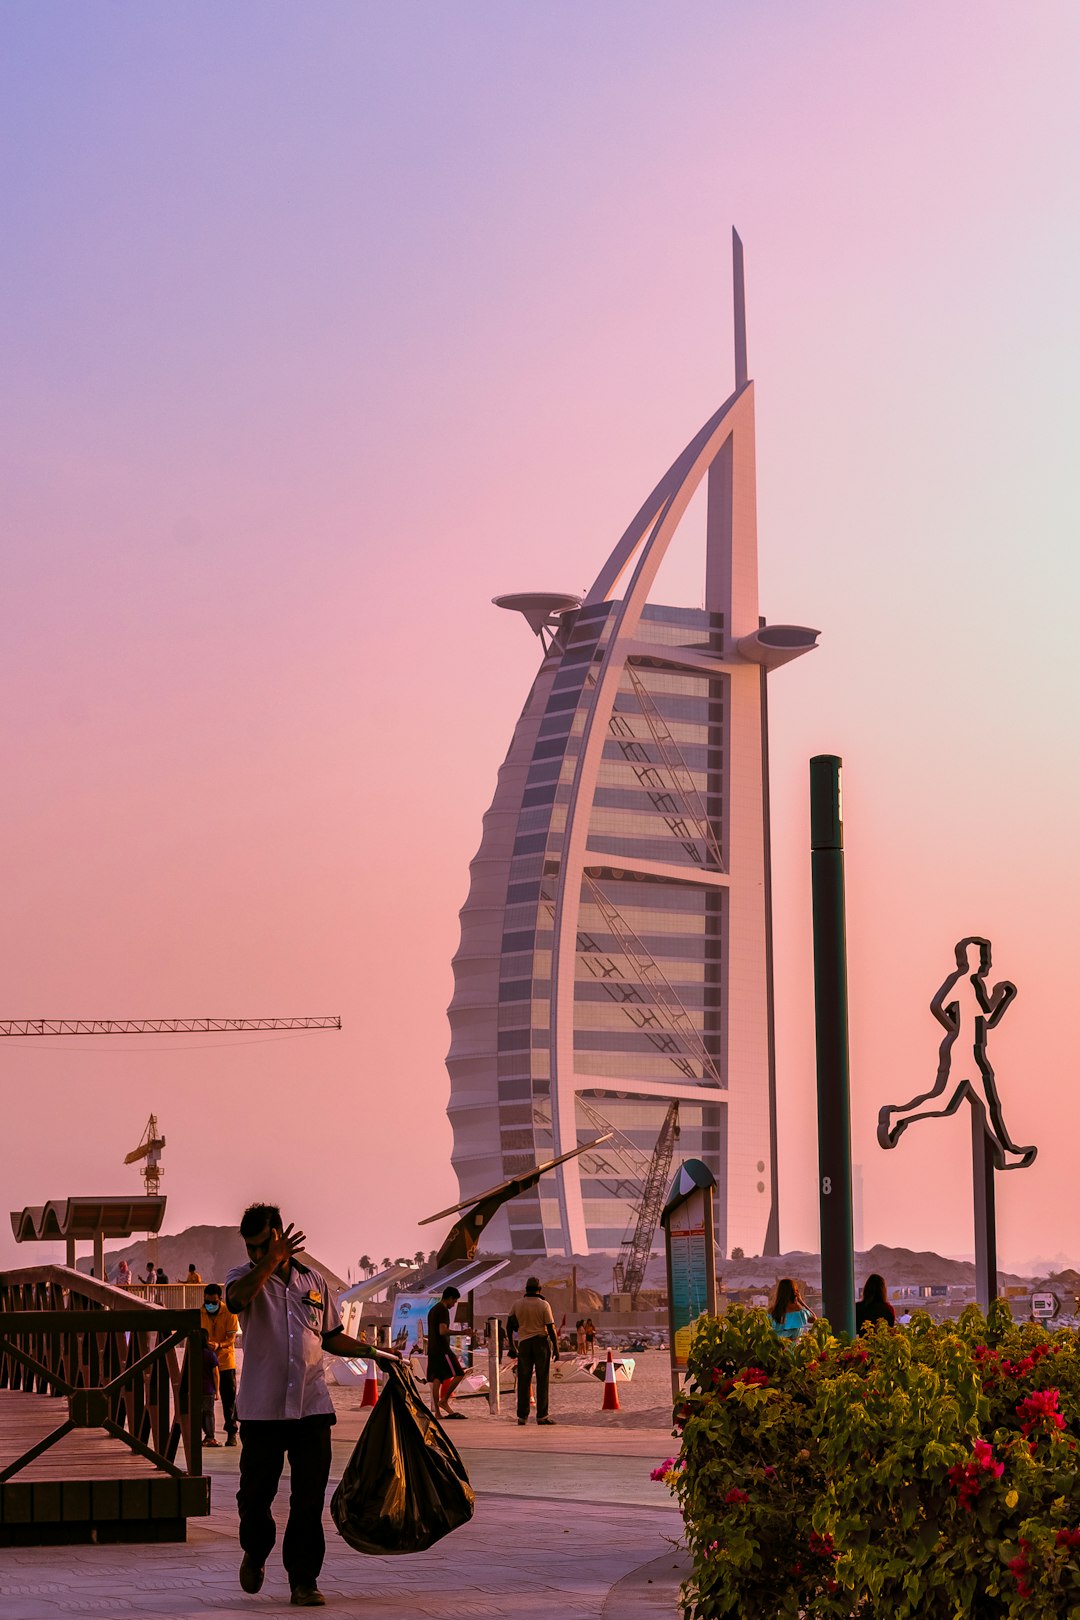 Landmark photo spot Burj Al Arab Jumeirah - Jumeirah Street - Dubai - United Arab Emirates Dubai Marina